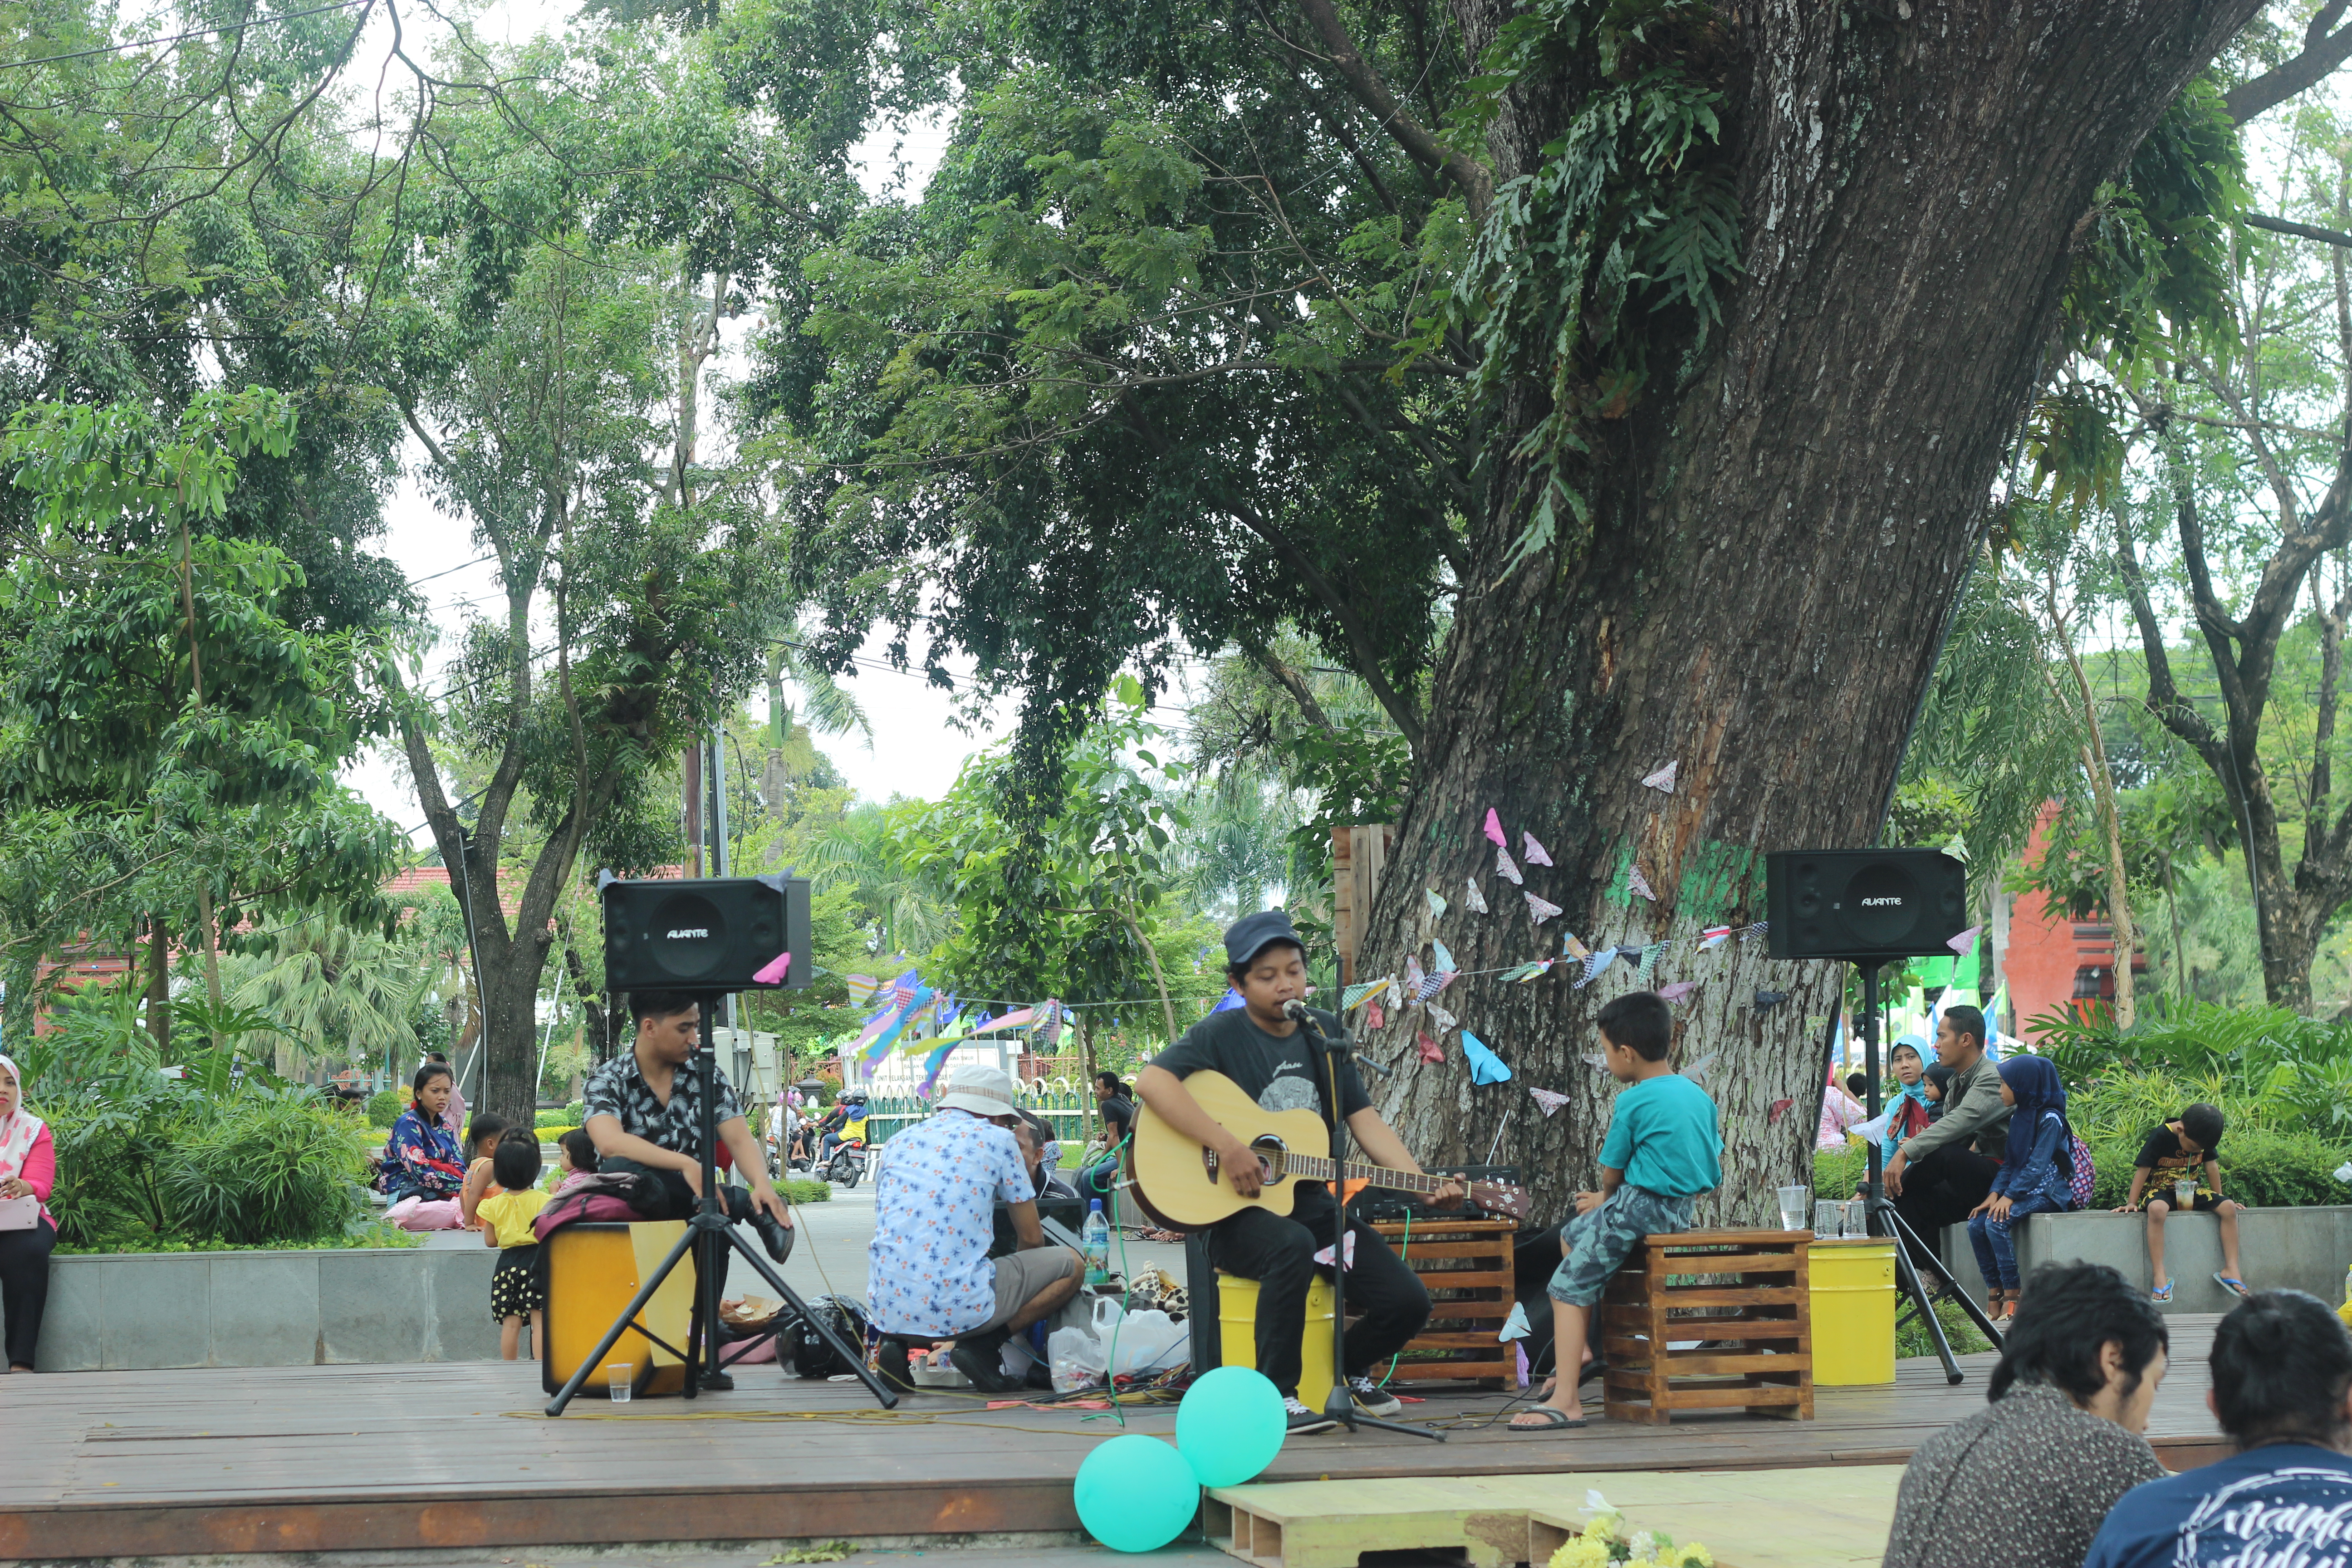 Penampilan Music Band Menghibur Pengunjung di Taman Sekartaji Kediri. Foto: Google Maps / fadiah bintoro